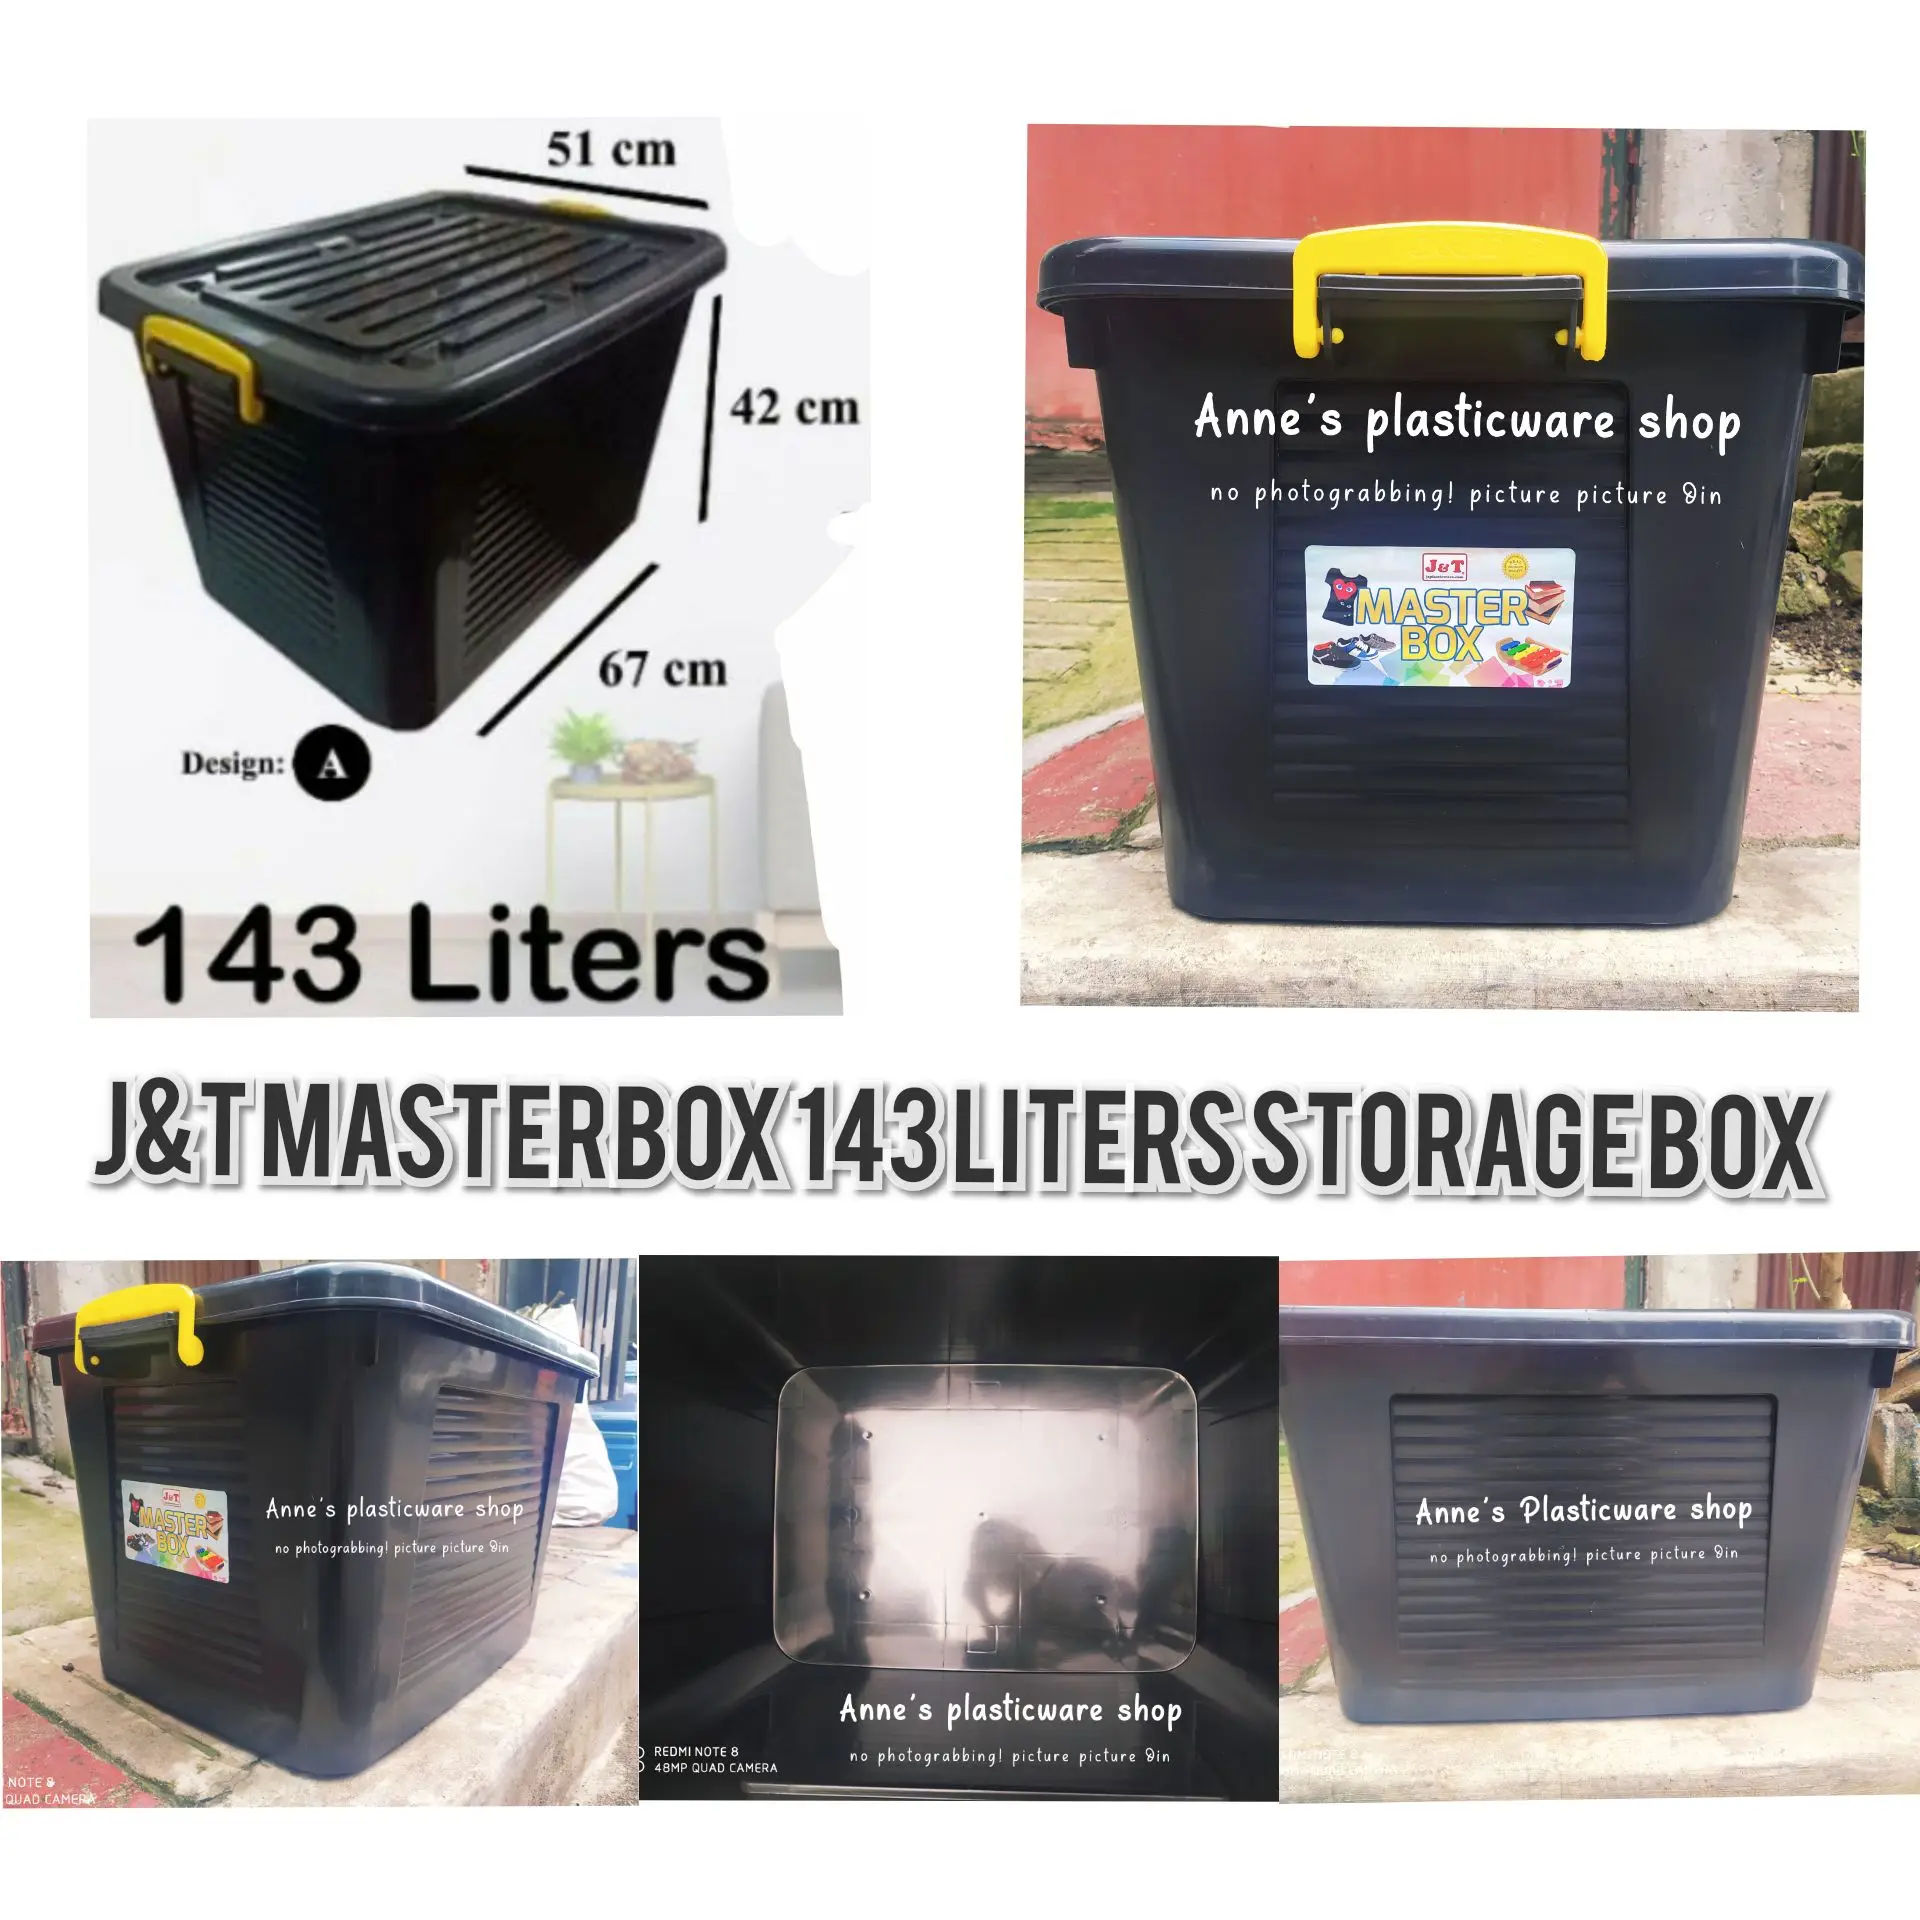 J&T MASTERBOX STORAGE BOX